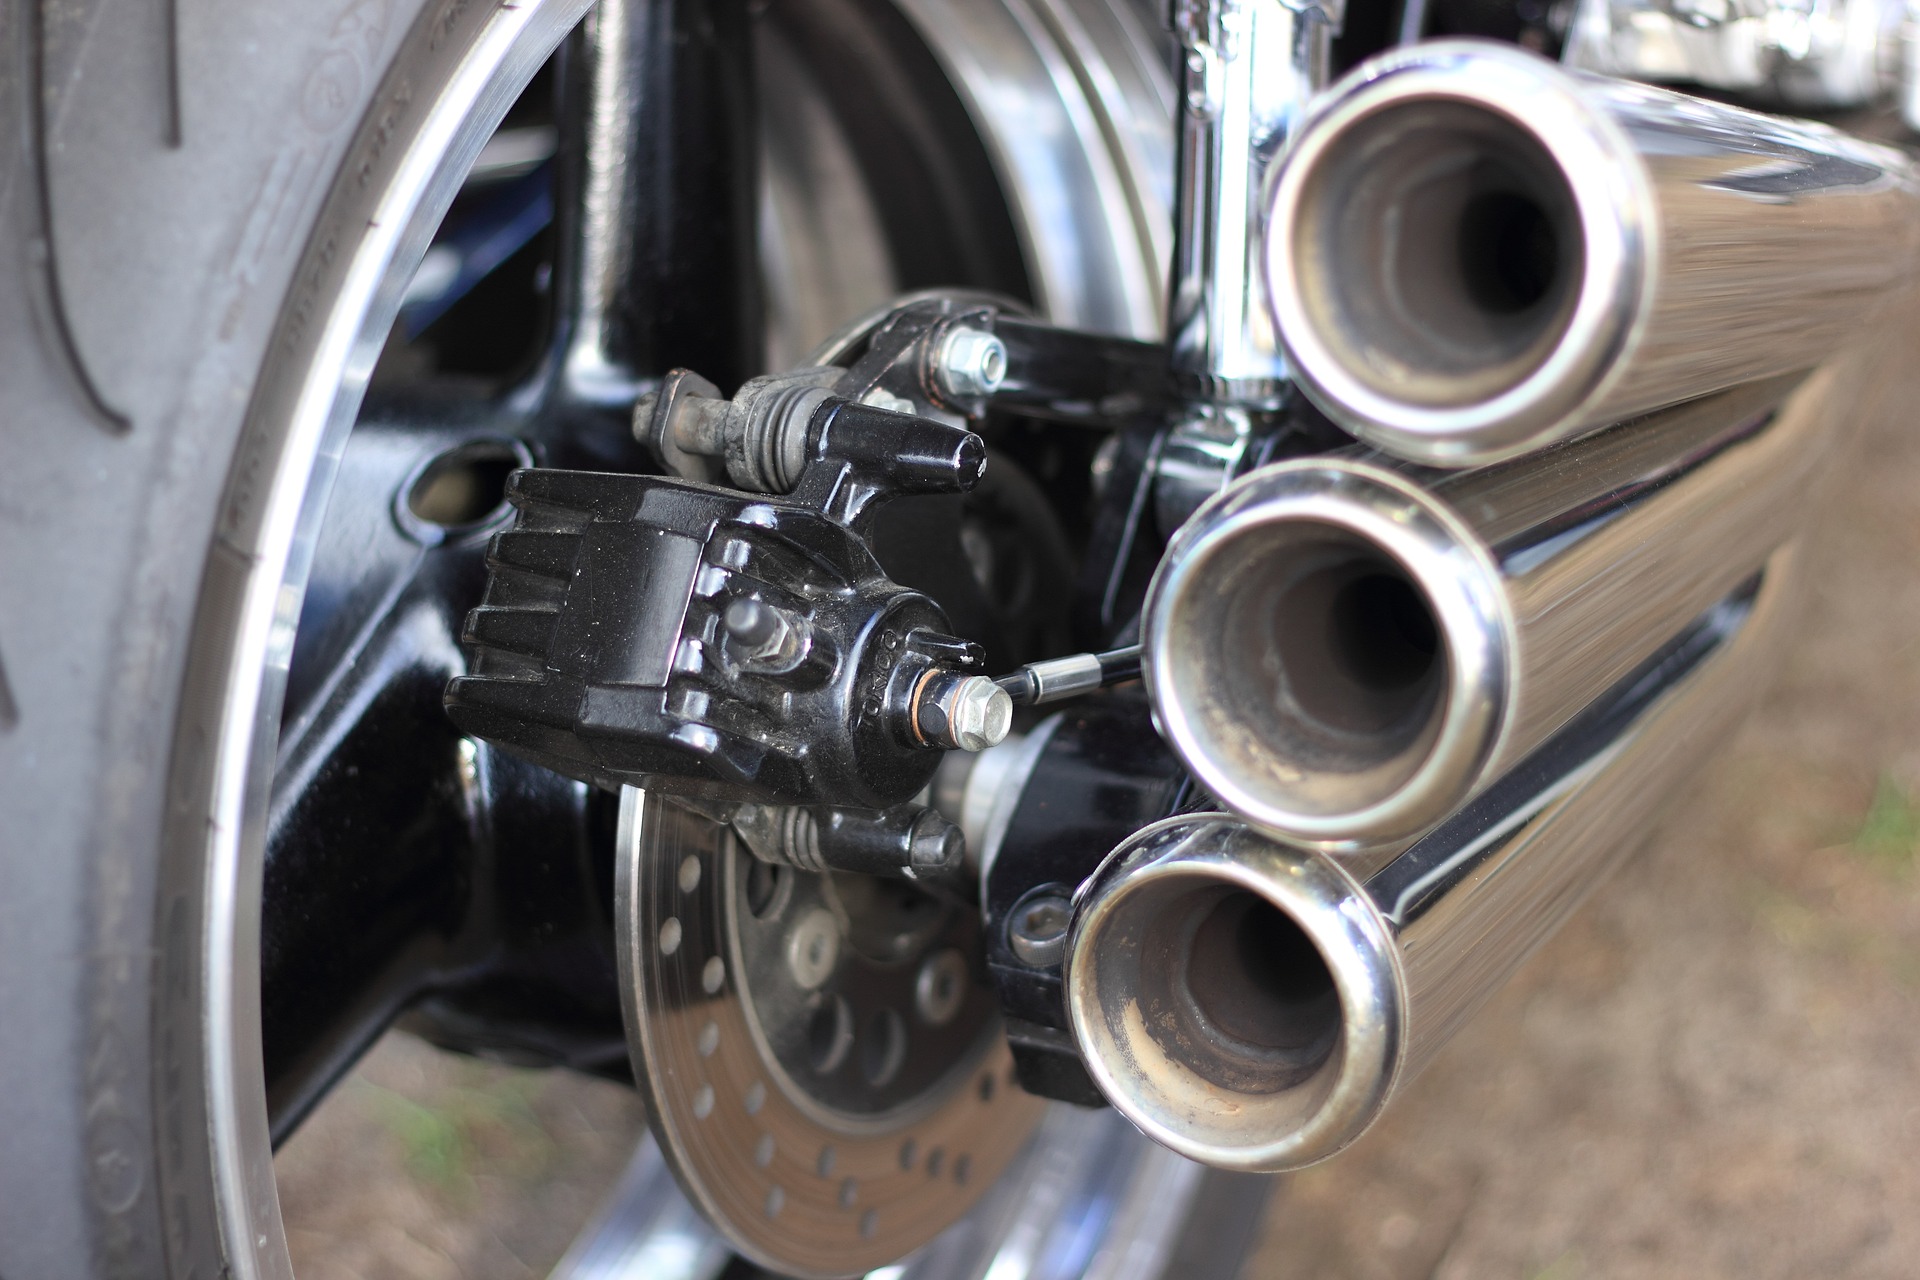 Image d'un pot d'échappement de moto haut de gamme en acier inoxydable avec une finition brillante et un design élégant